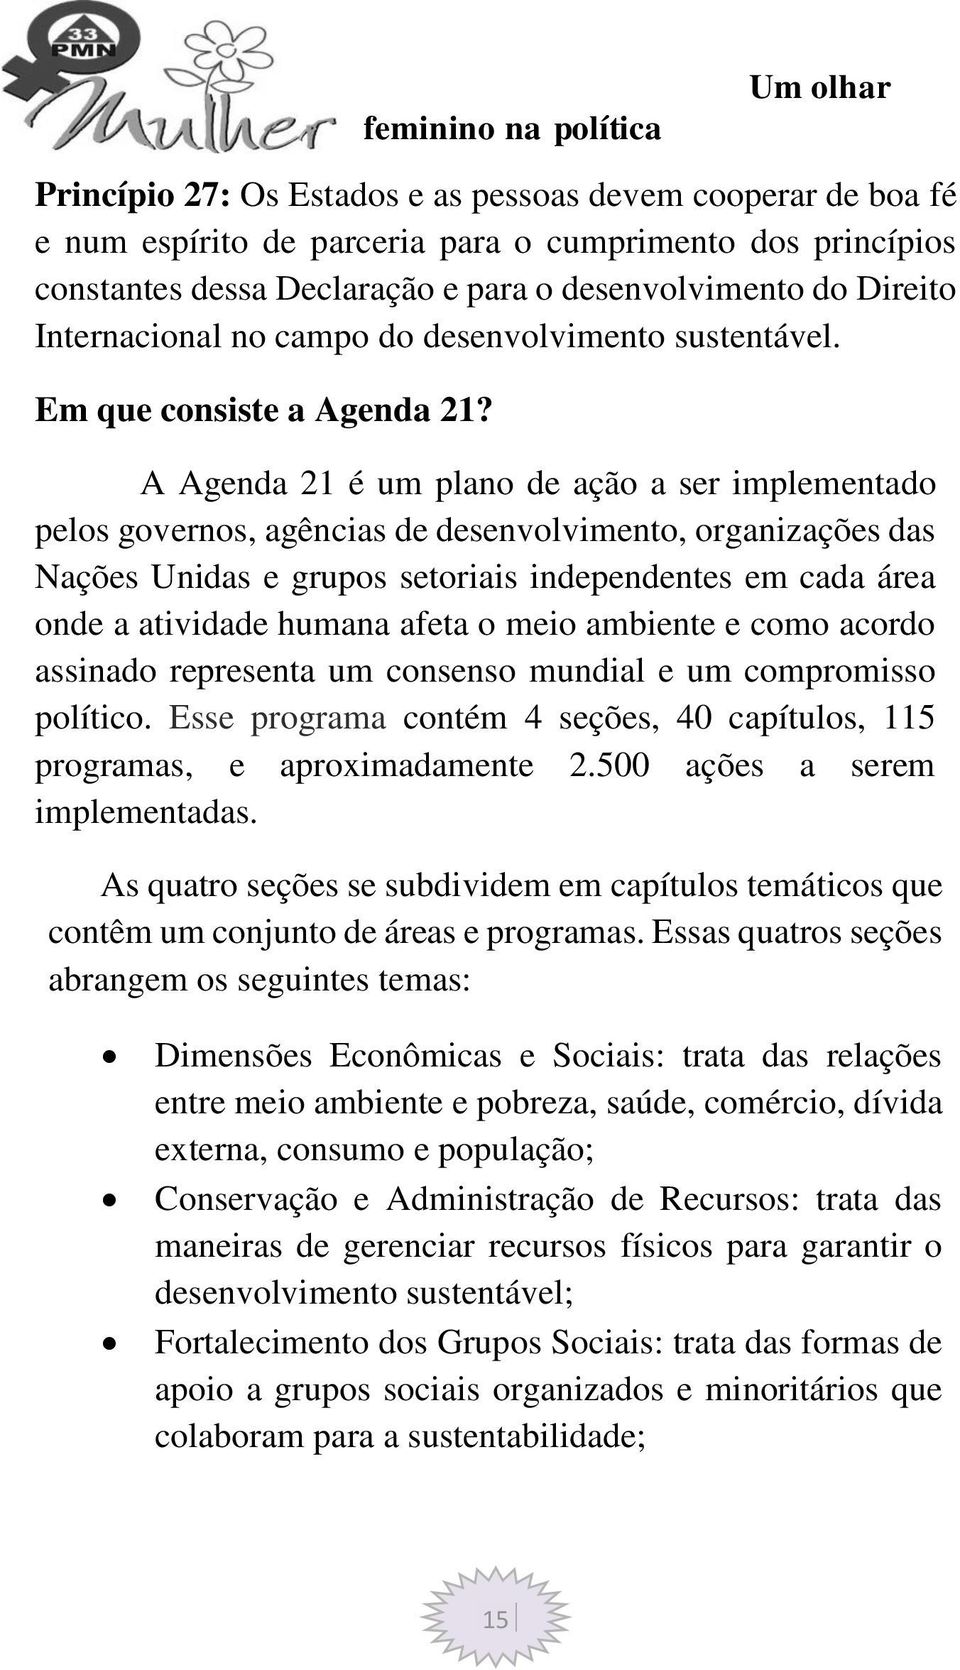 A Agenda 21 é um plano de ação a ser implementado pelos governos, agências de desenvolvimento, organizações das Nações Unidas e grupos setoriais independentes em cada área onde a atividade humana